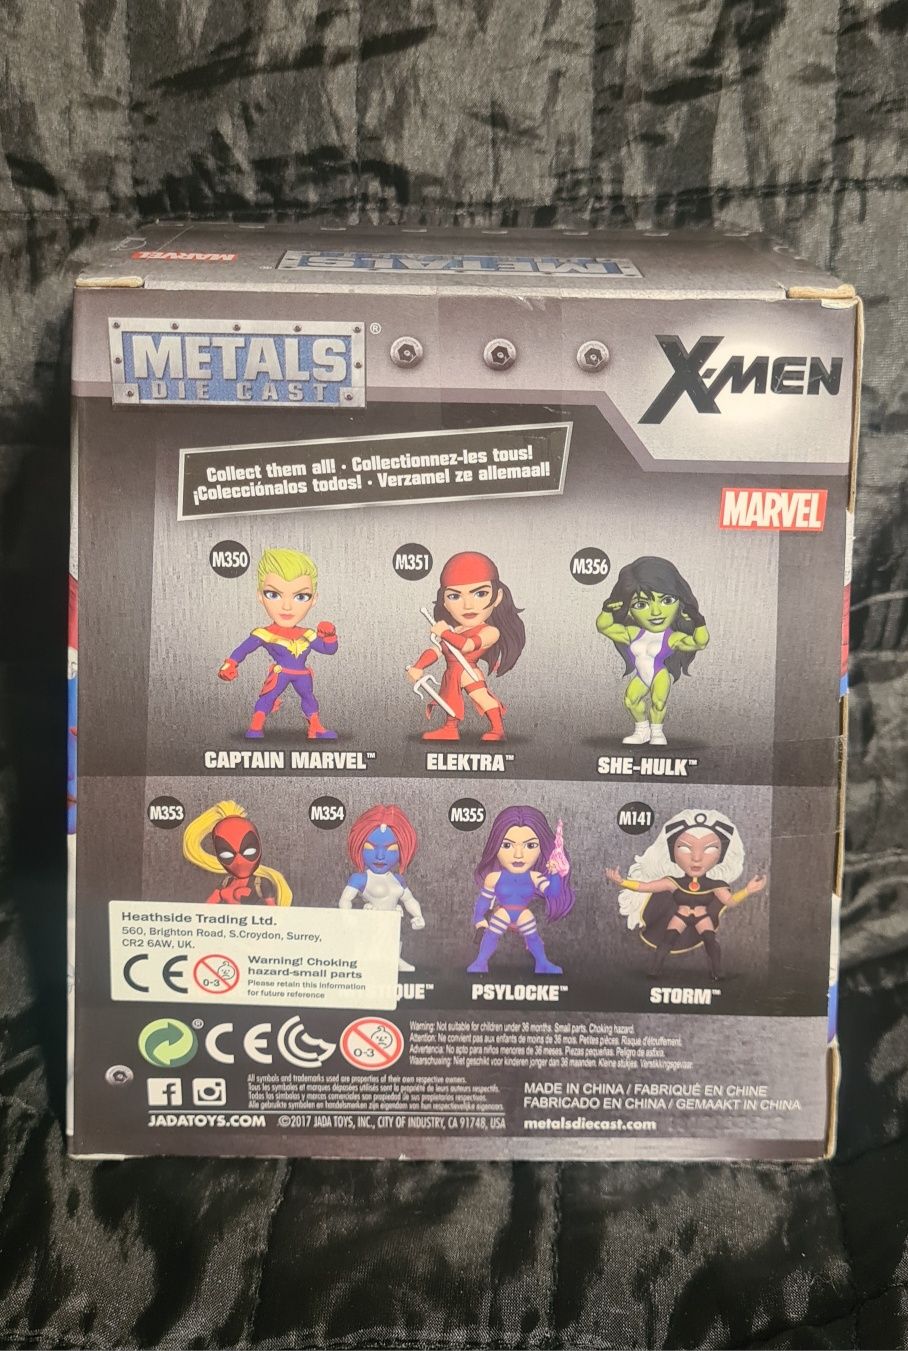 [15] X-Men Marvel Comics Mystique 4" calowa figurka odlew metalowa fig